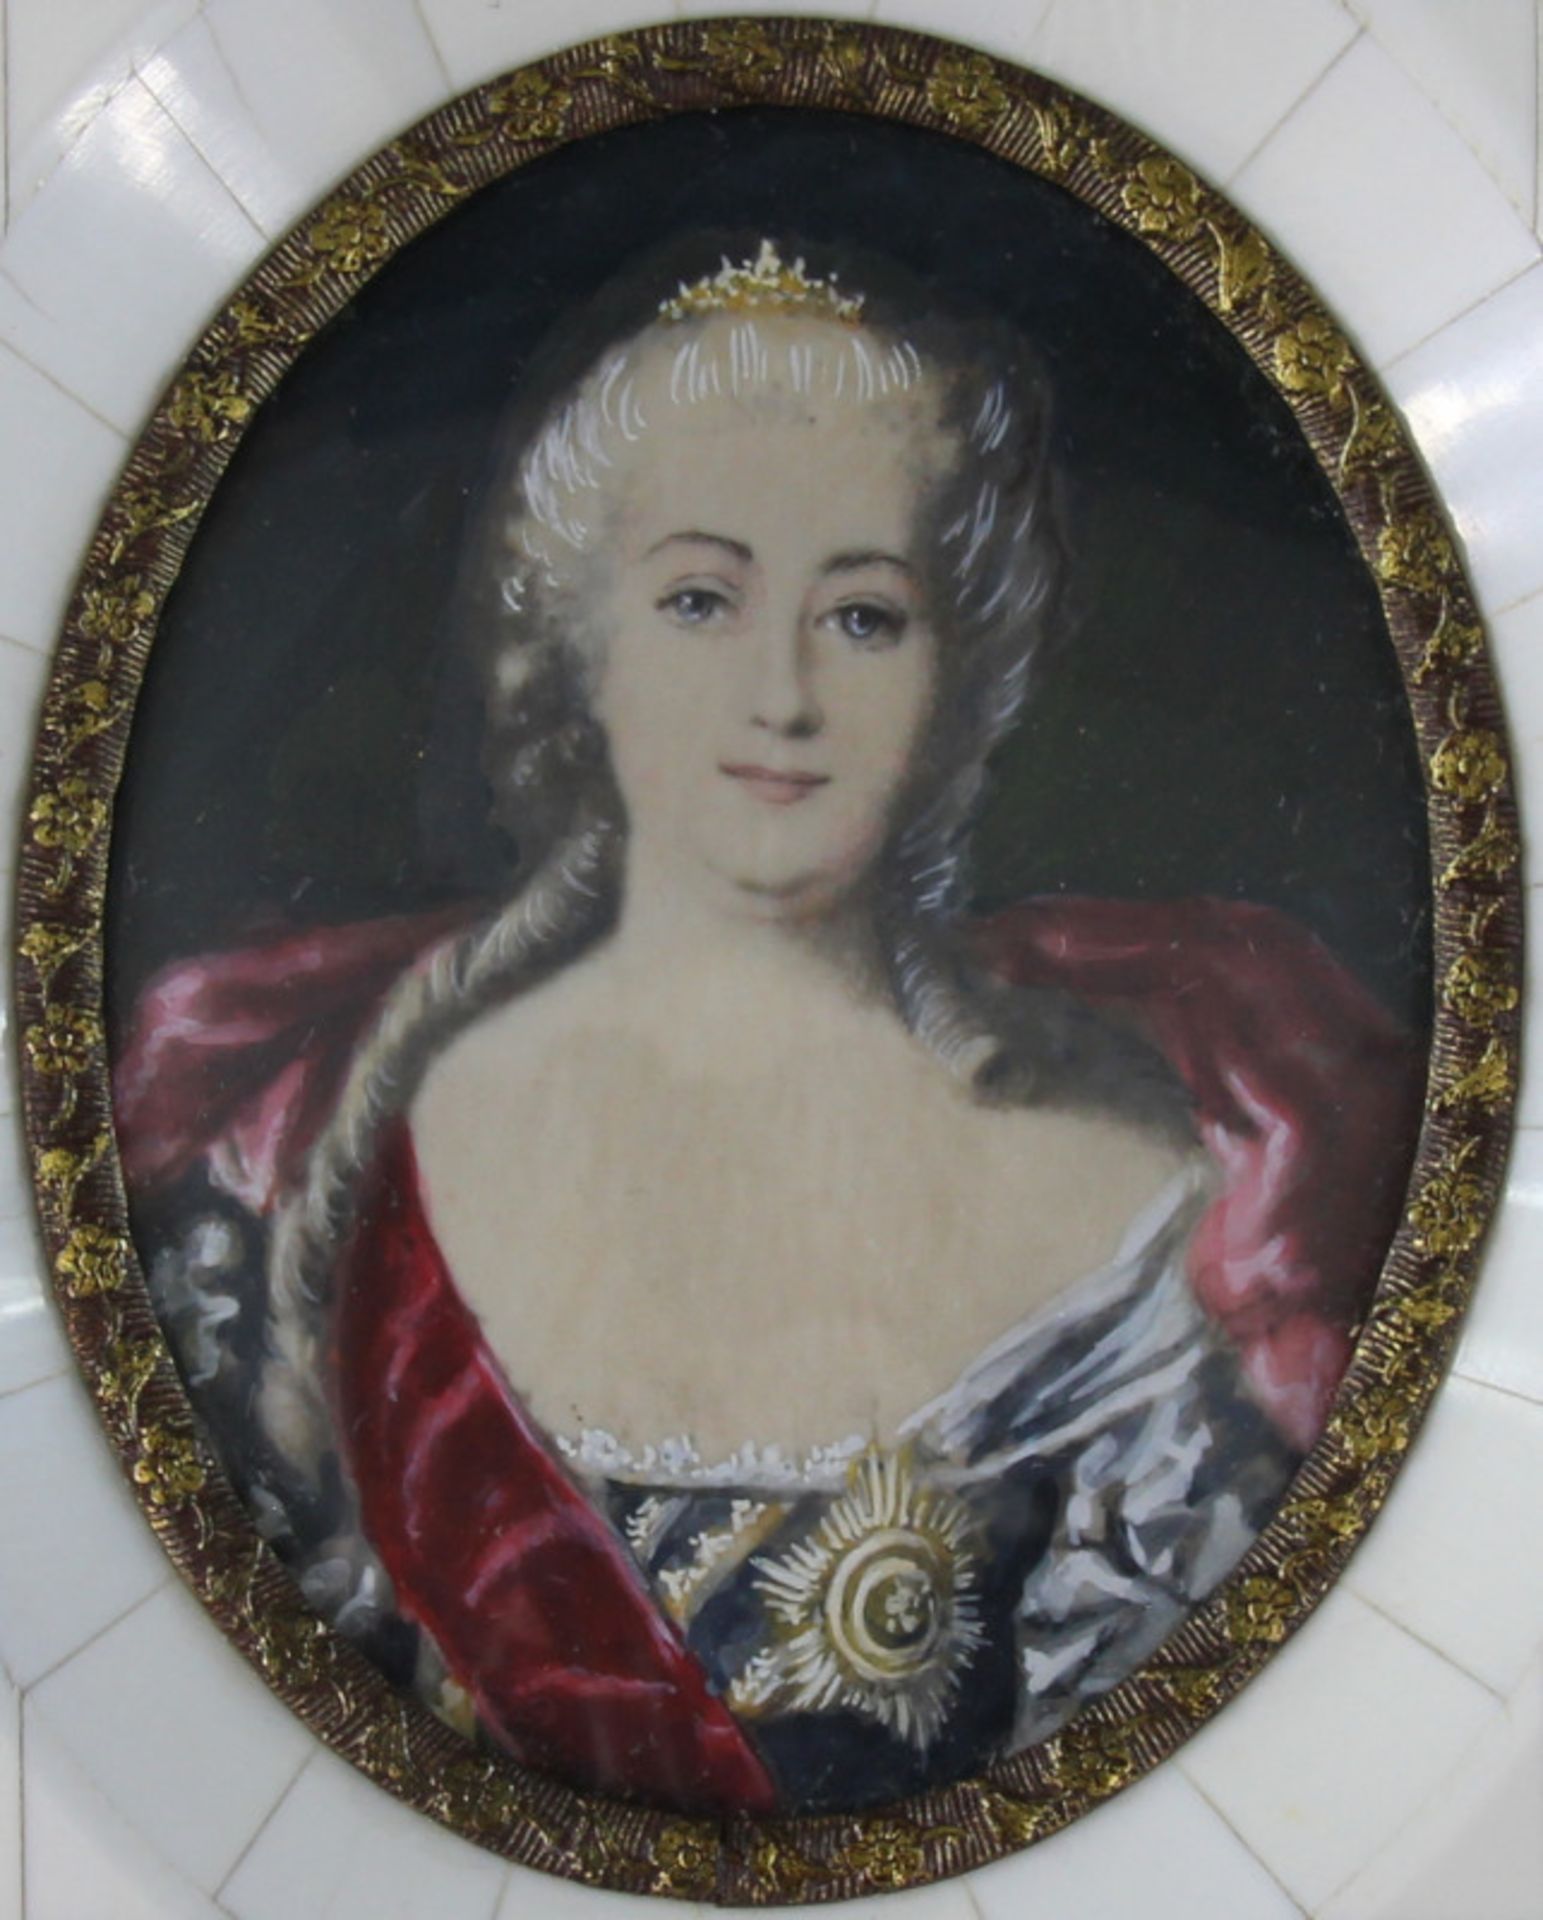 Miniatur, "Katharina die Große (1729 - 1796)"unsigniert, guter Erhaltungszustand, Bildmaße: 8,5cm - Bild 2 aus 2